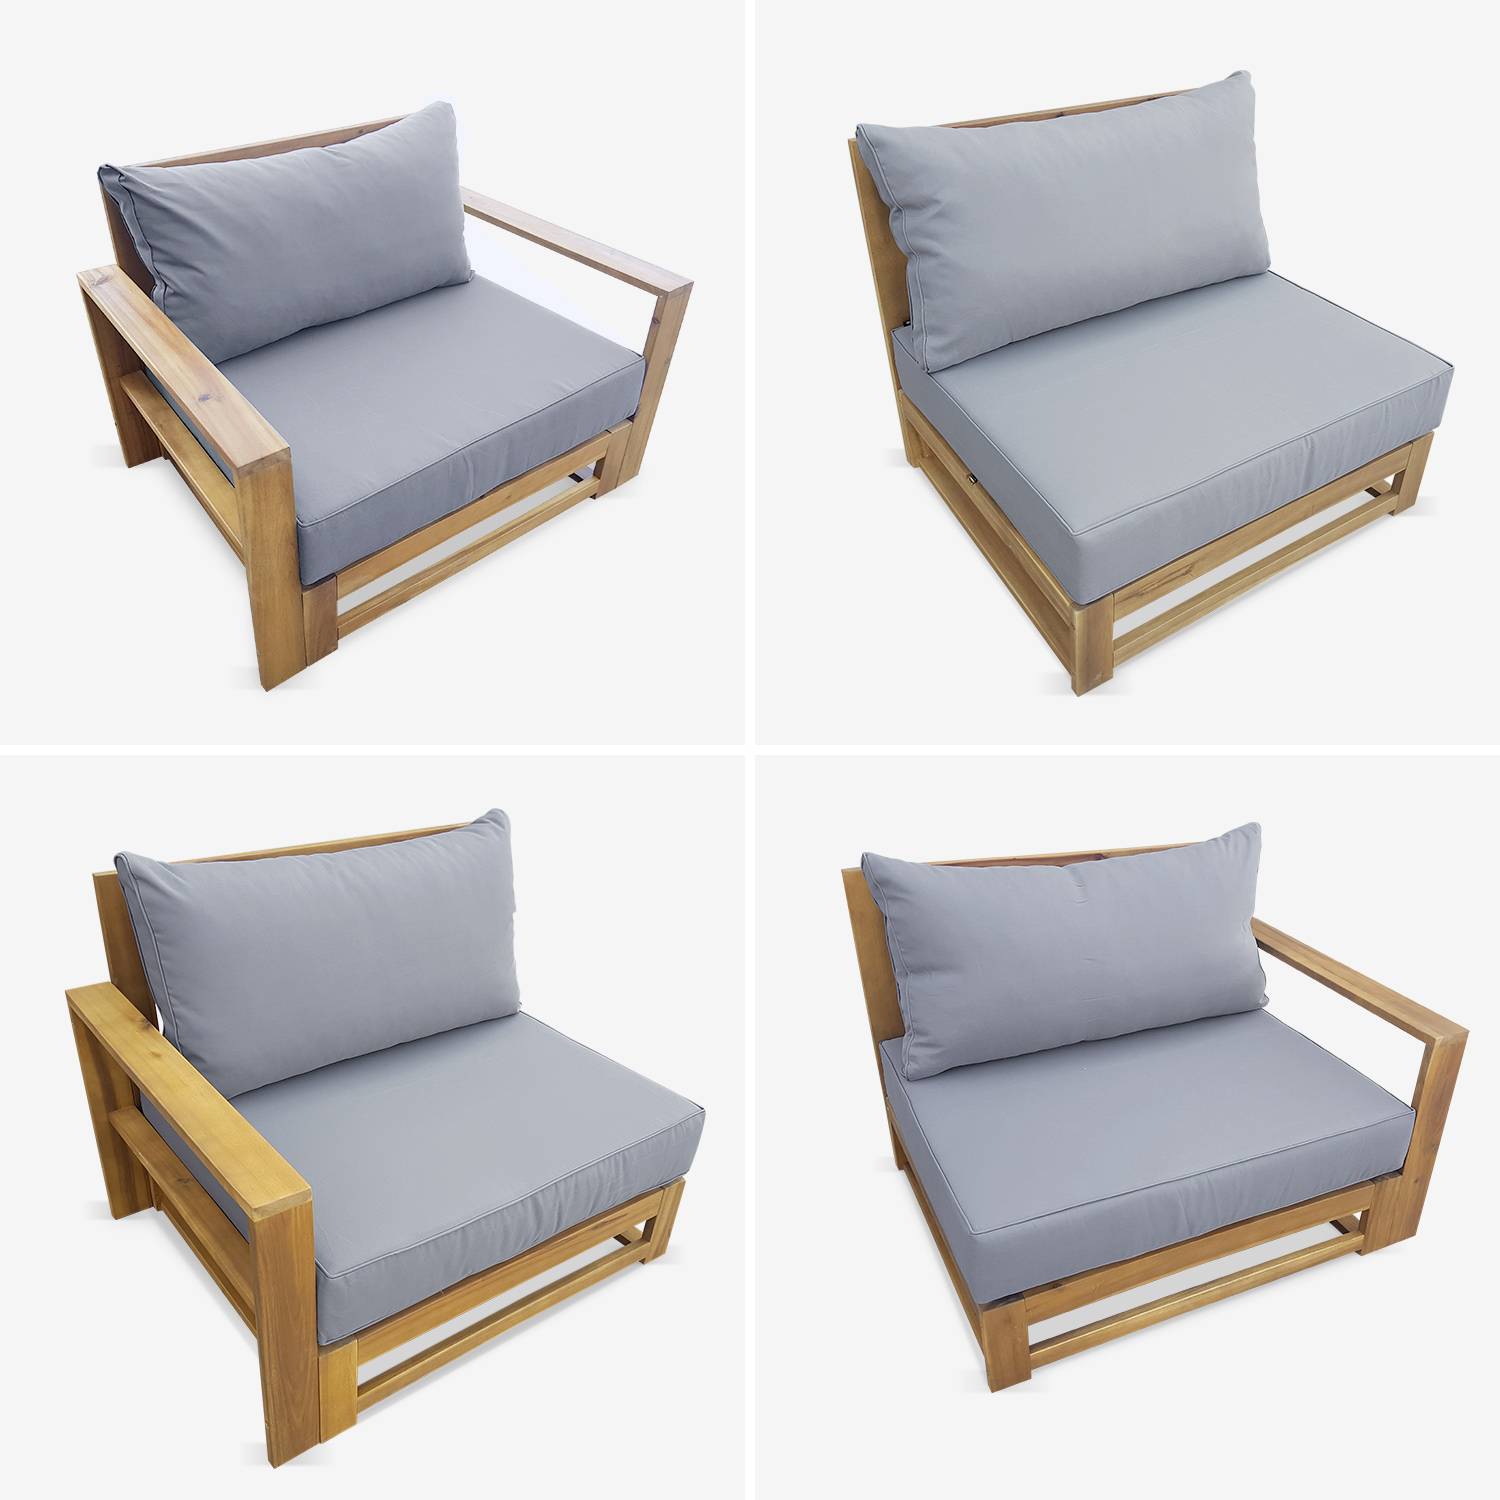 Gartenmöbel aus Holz mit 5 Sitzplätzen - Mendoza - graue Kissen, Sofa, Sessel und Couchtisch aus Akazie, 6 modulare Elemente, Design Photo5